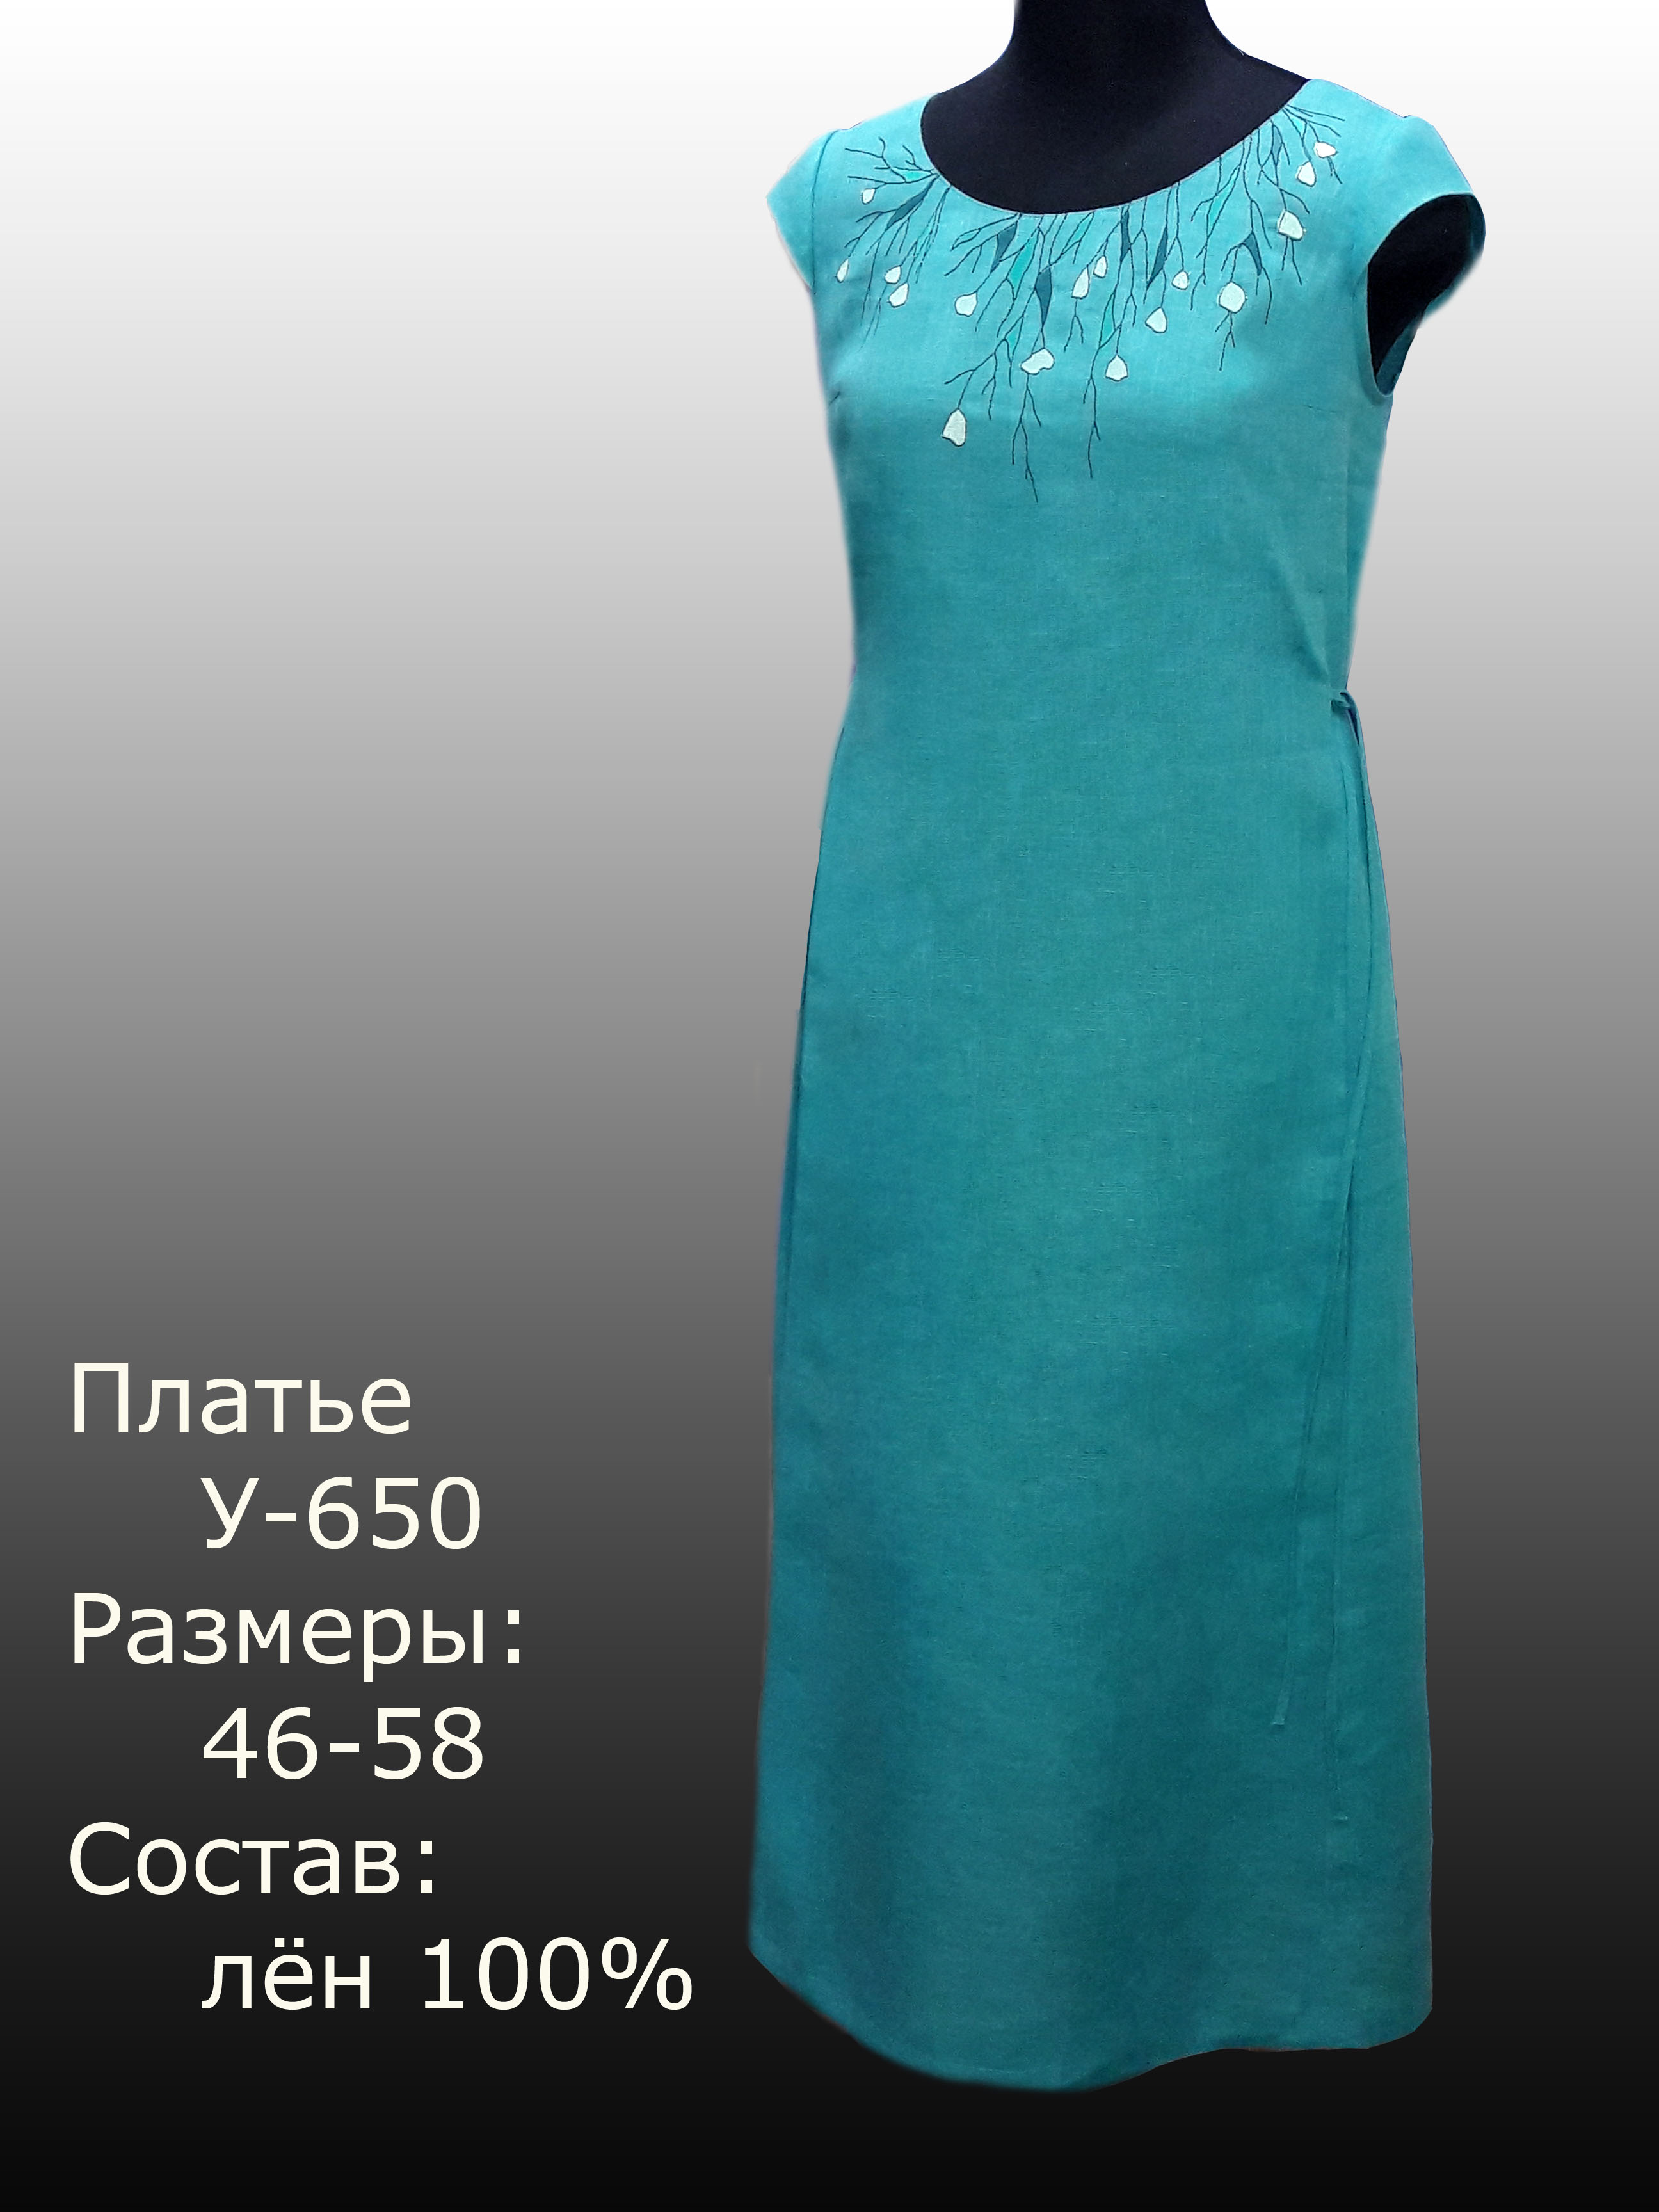 Платье льняное у-650 елецкие узоры